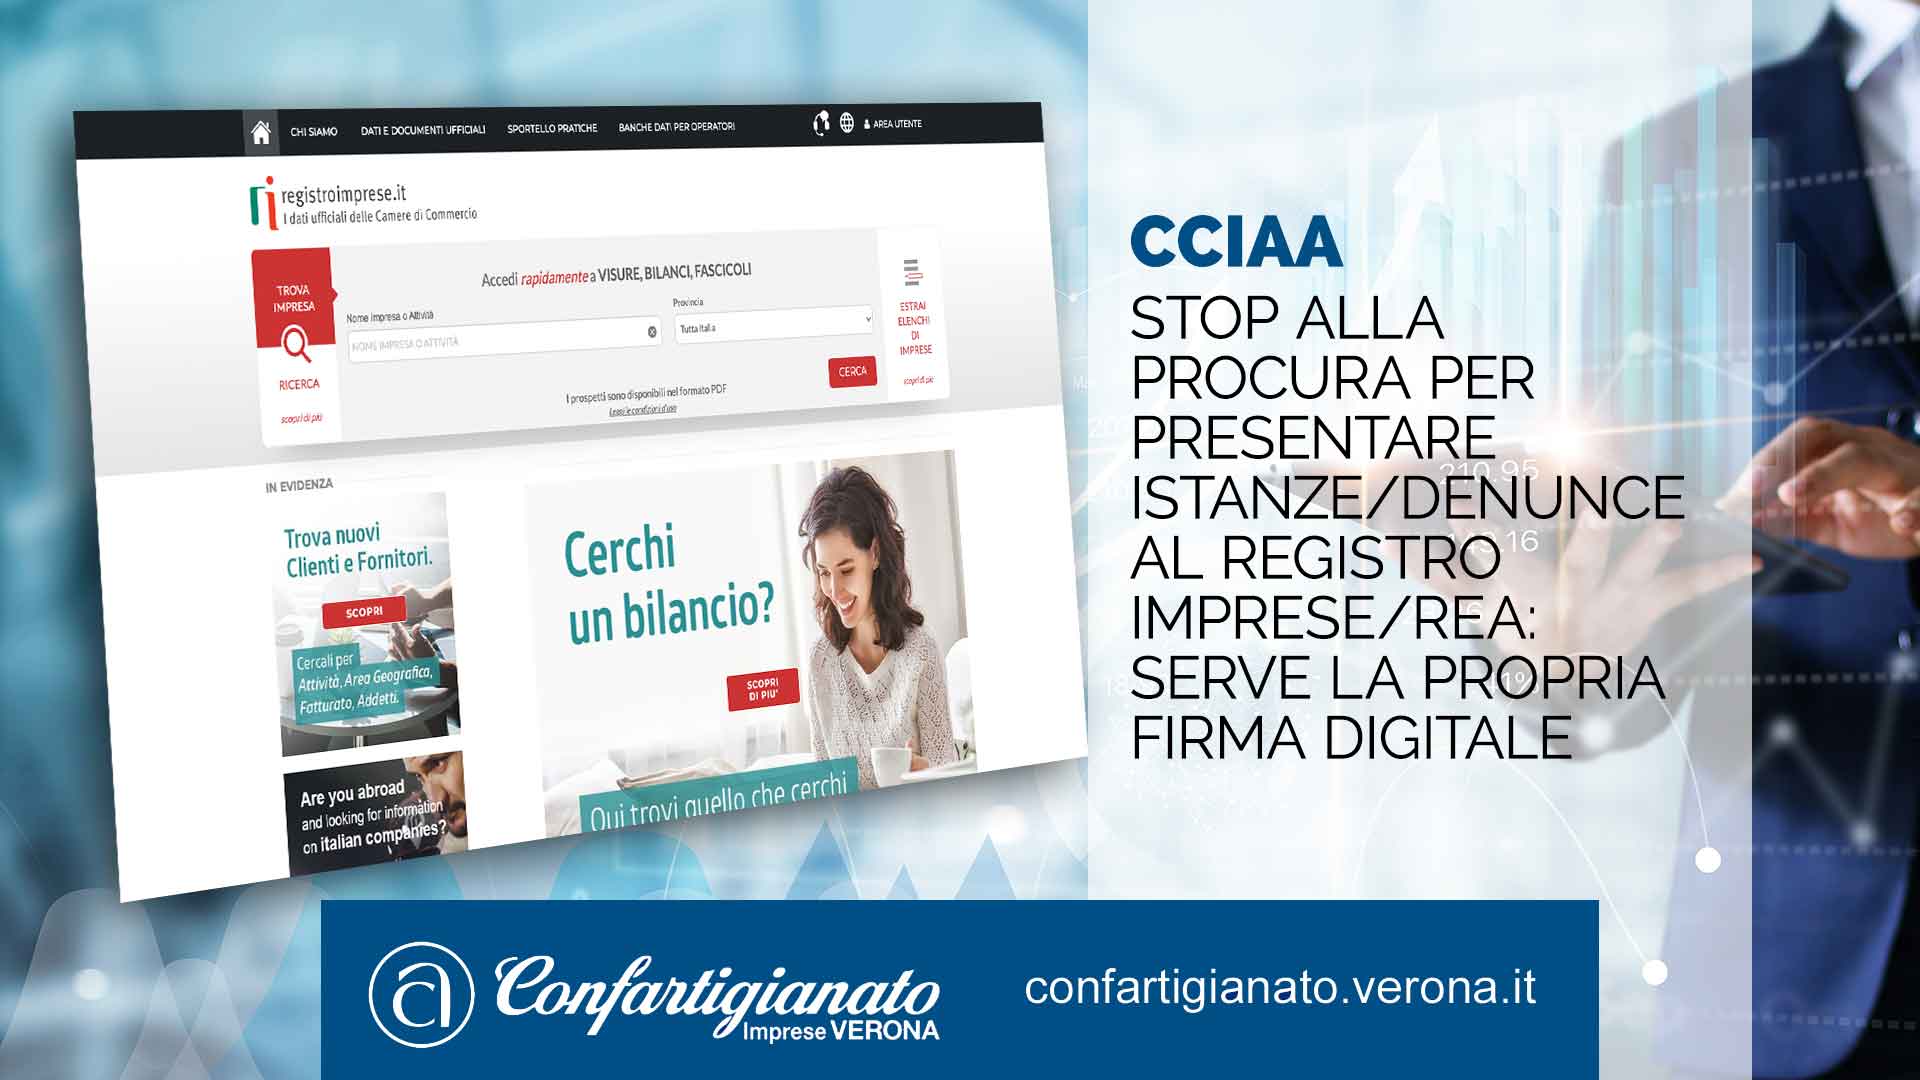 CCIAA – Stop alla procura per presentare istanze/denunce al Registro Imprese/REA: serve la propria firma digitale